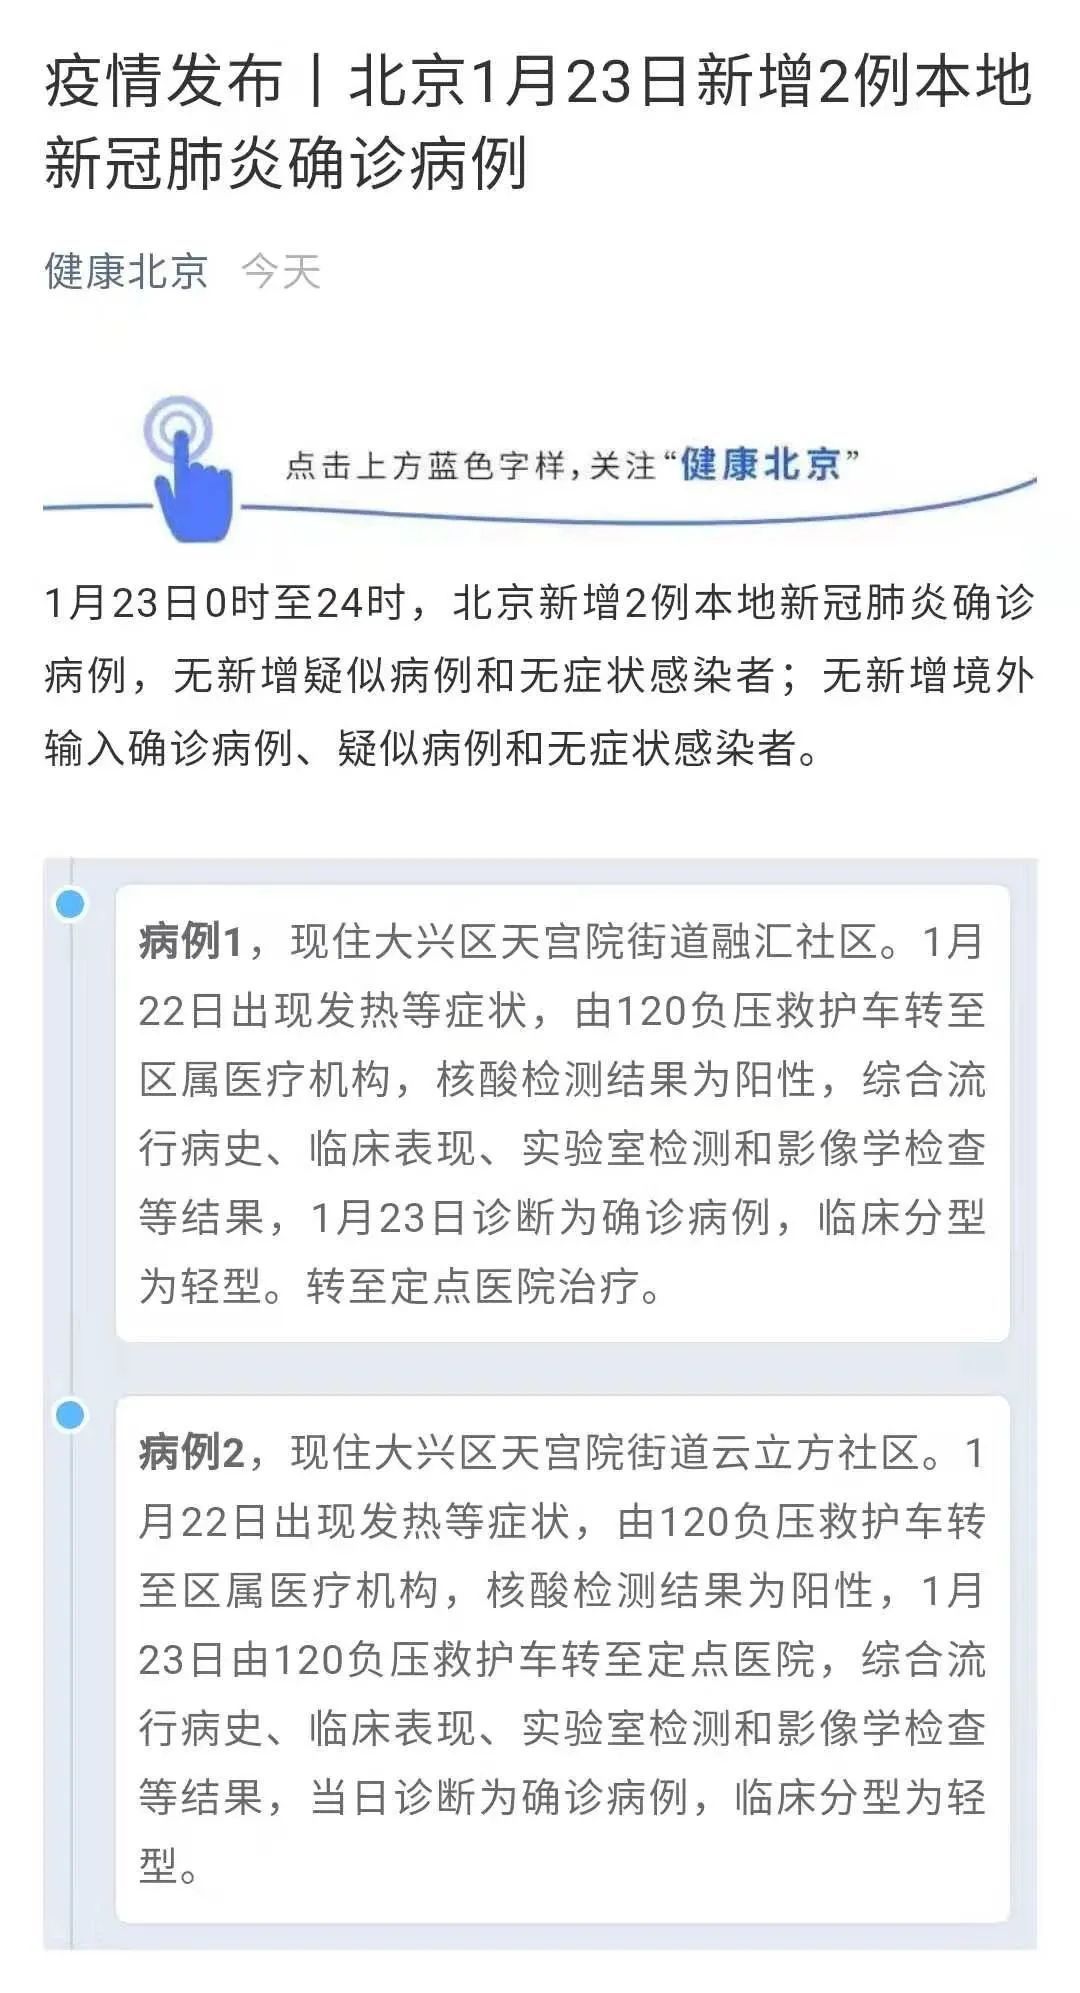 “只提地点不提人”，上海北京通报出现新变化，网友点赞